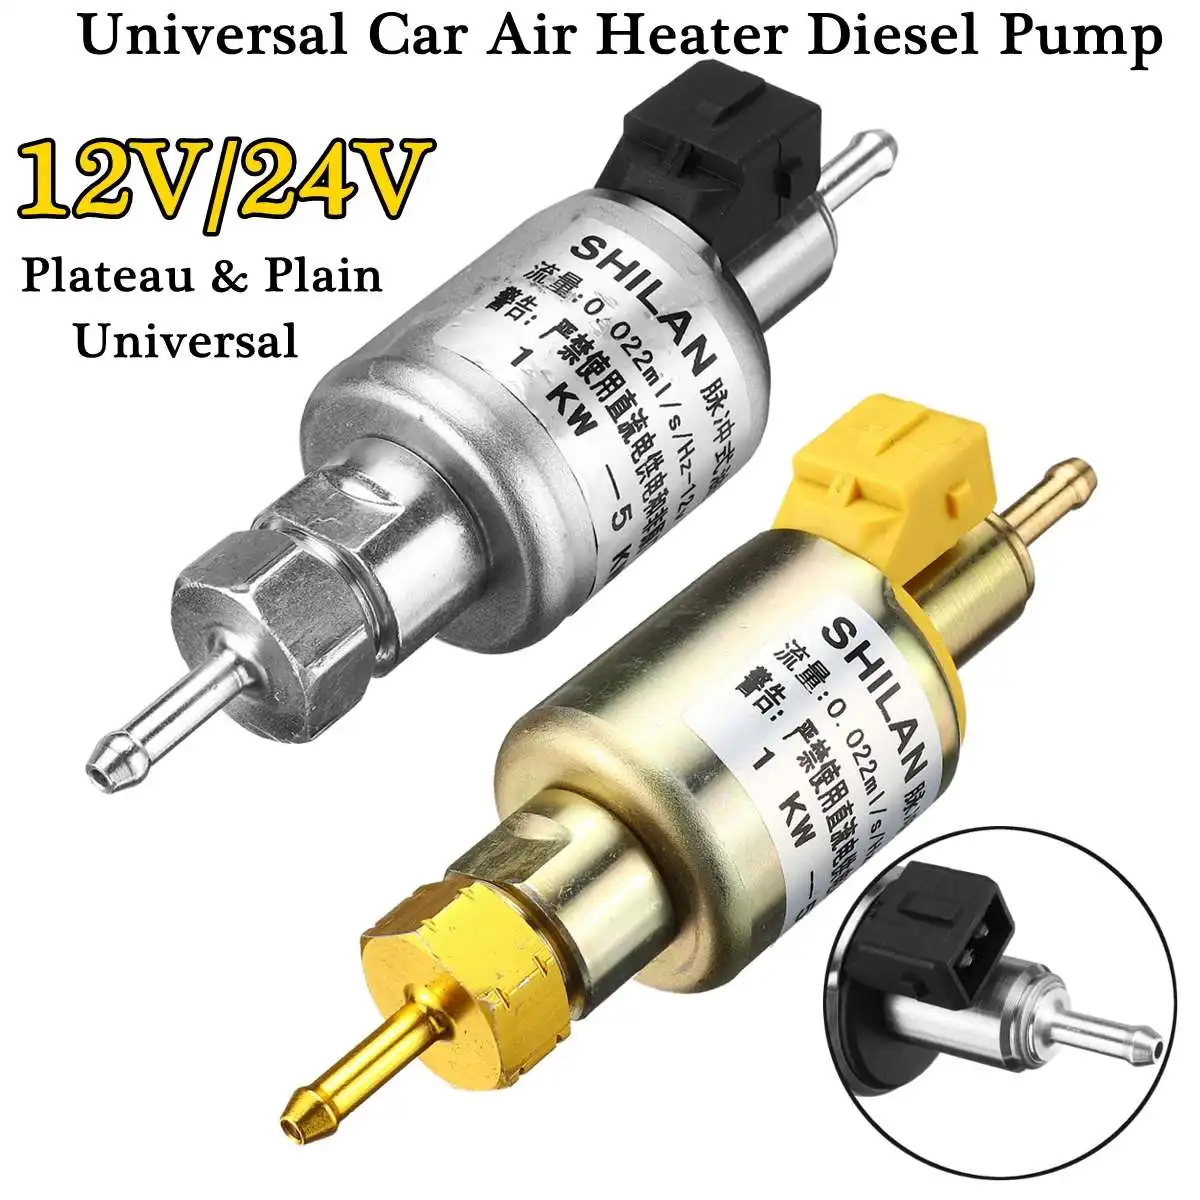 Αγορά Ηλεκτρονικός εξοπλισμός αυτοκινήτου  Plain Universal Fuel Pump  Diesel Heater 12V/24V 10A 22Mpa 1KW-5KW Car Air Parking Heater with Lid  Holder Housing